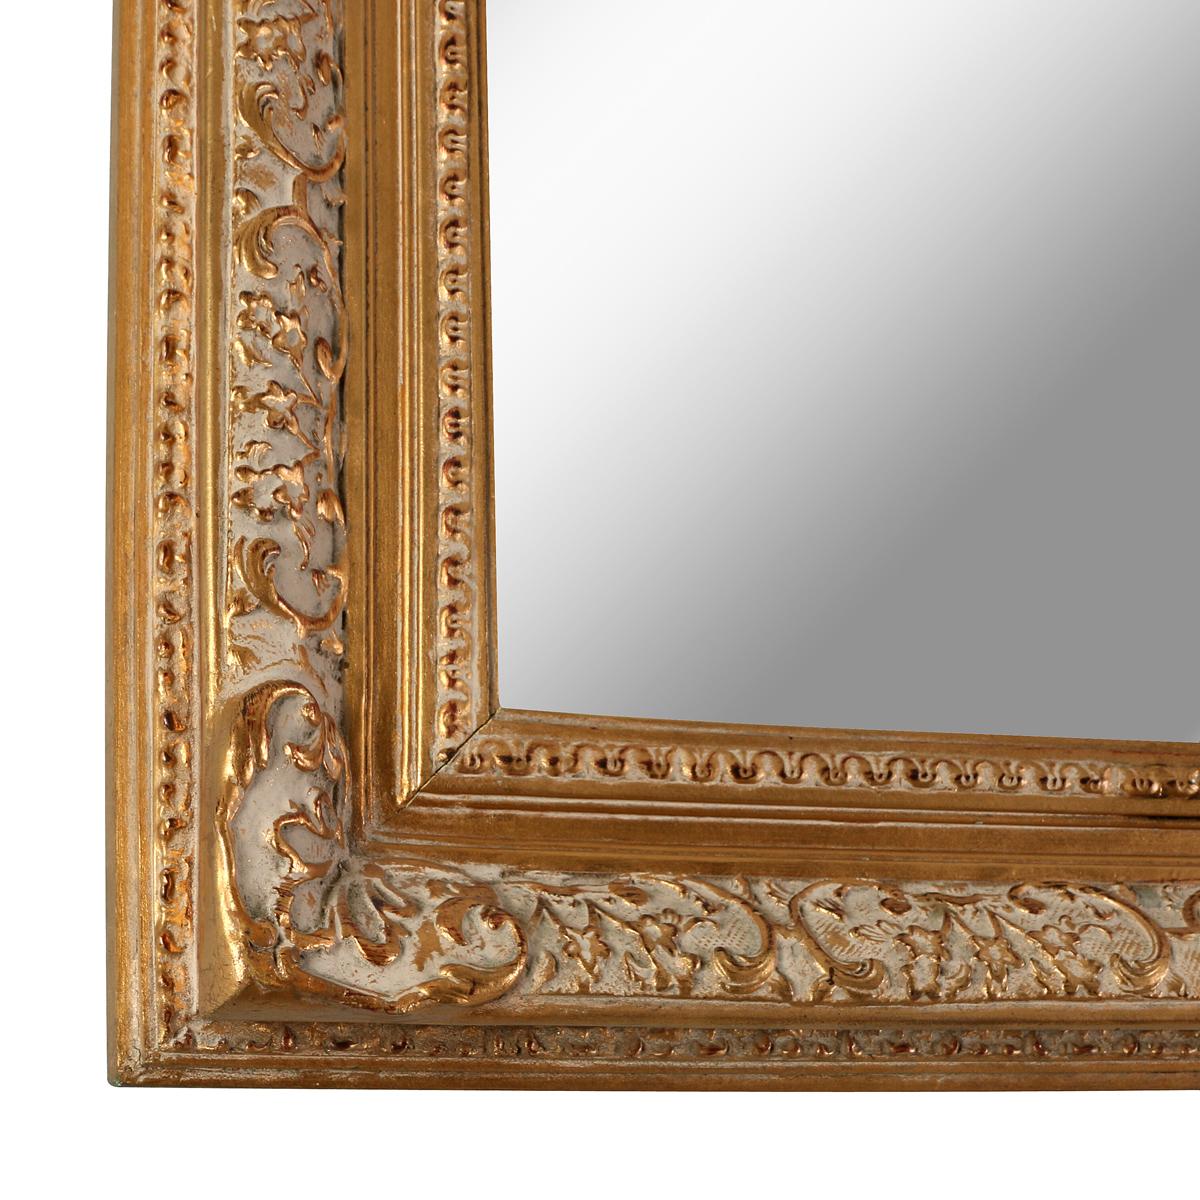 Miroir en bois doré avec de jolies décorations sculptées entre les moulures intérieures et extérieures.  Le cadre intérieur sculpté n'est que partiellement doré, révélant la peinture de base inférieure appliquée avant le feuilletage. Cela confère au